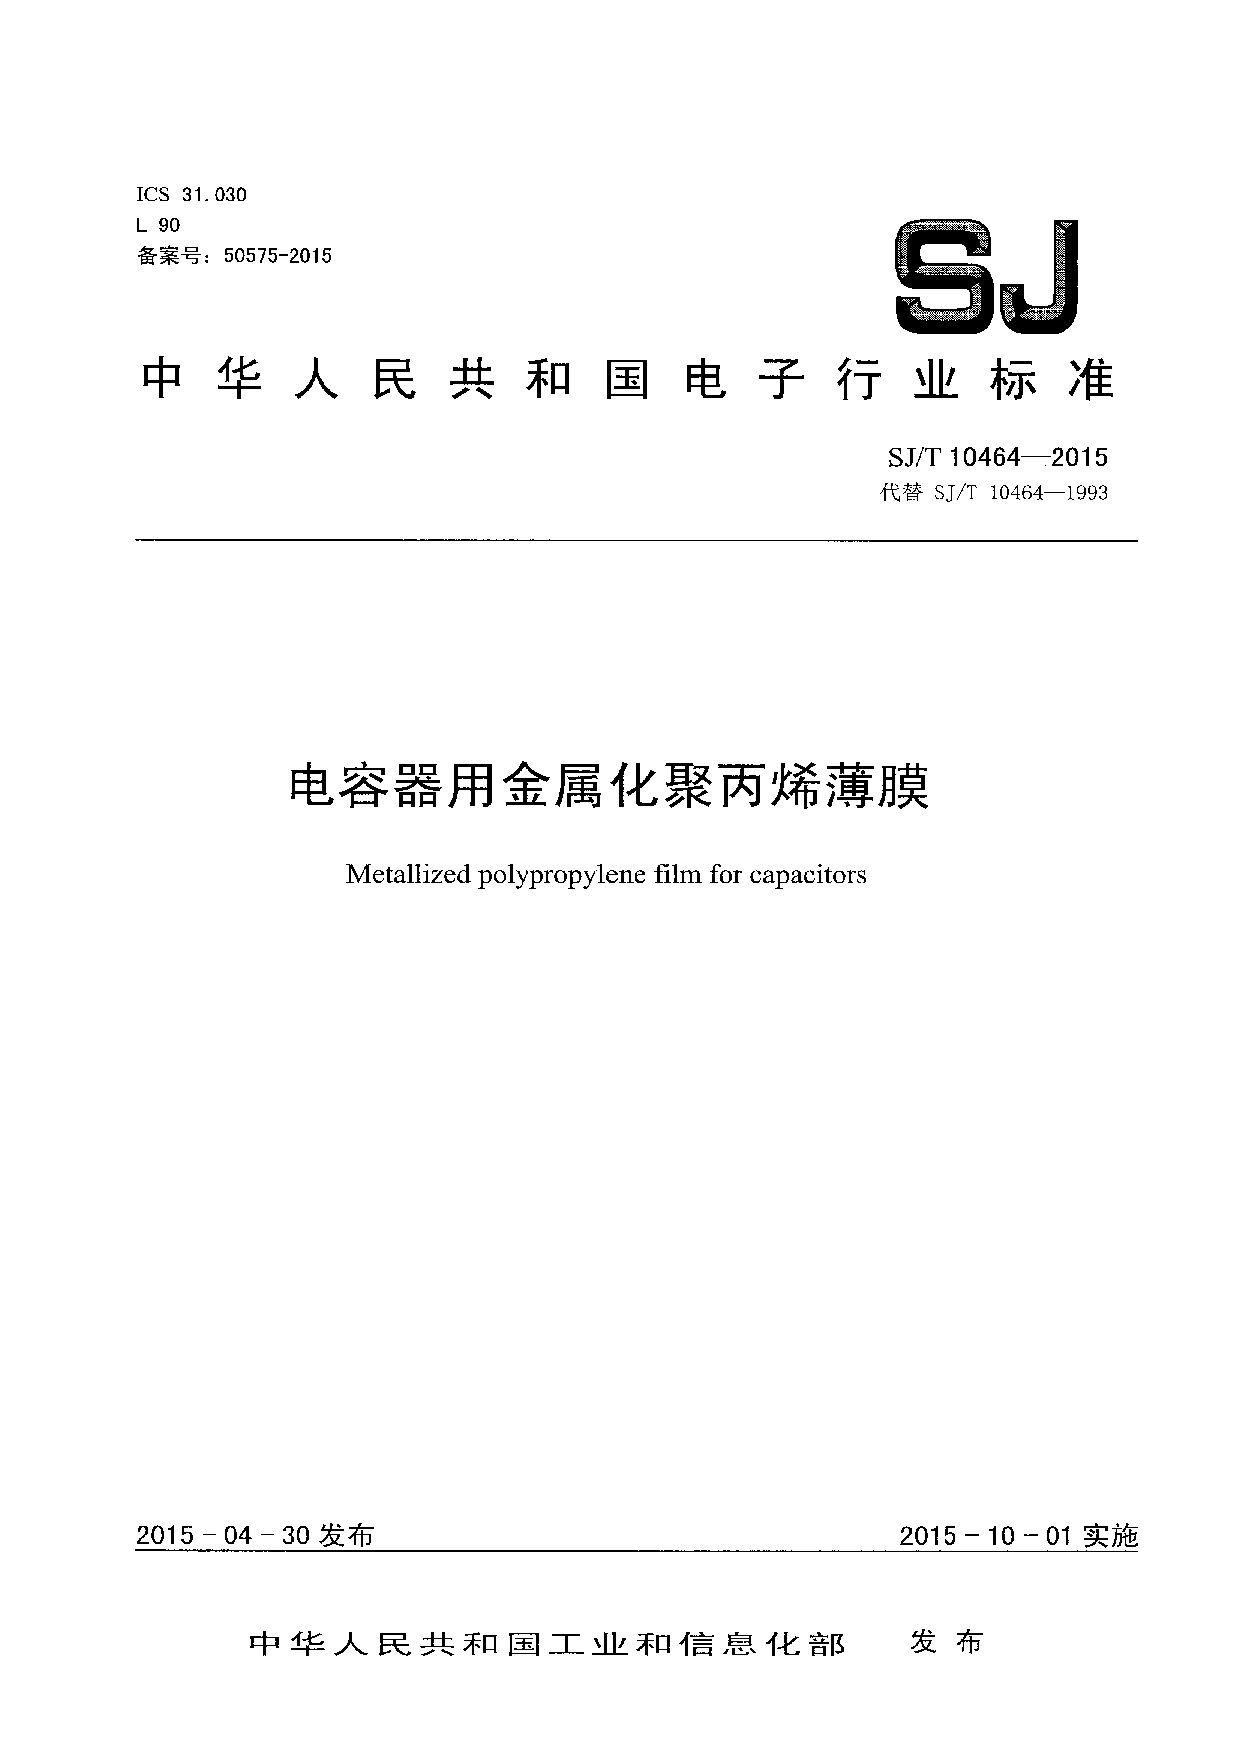 SJ/T 10464-2015封面图